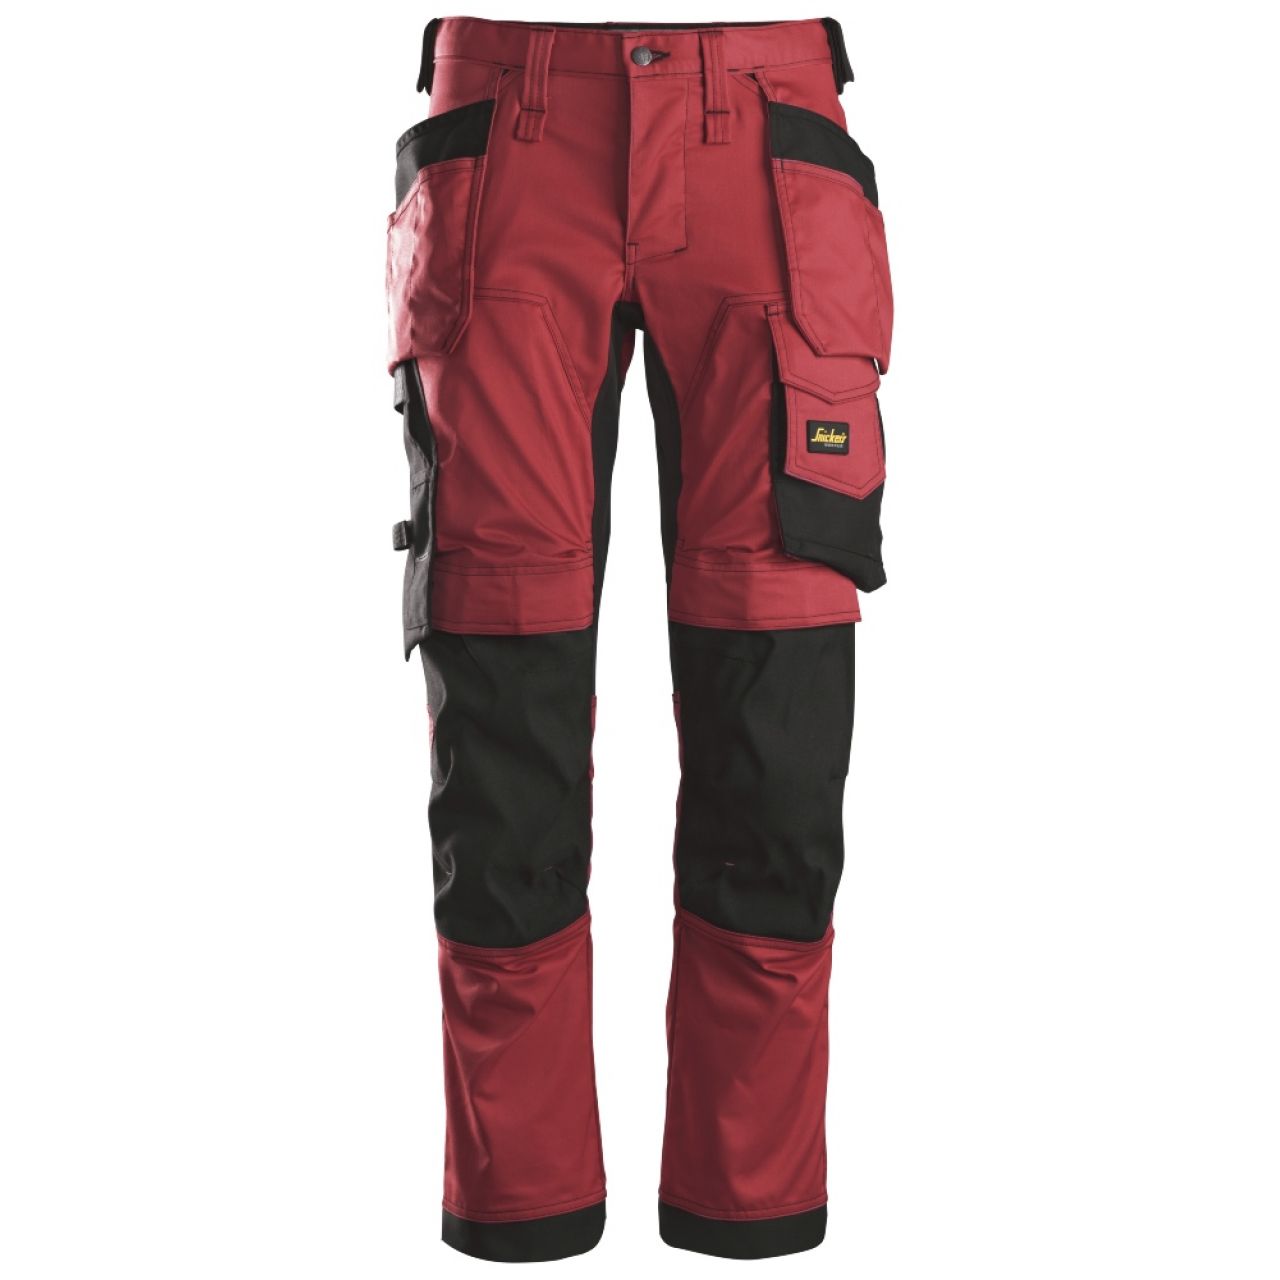 6241 Pantalones largos de trabajo elásticos con bolsillos flotantes AllroundWork rojo-negro talla 54